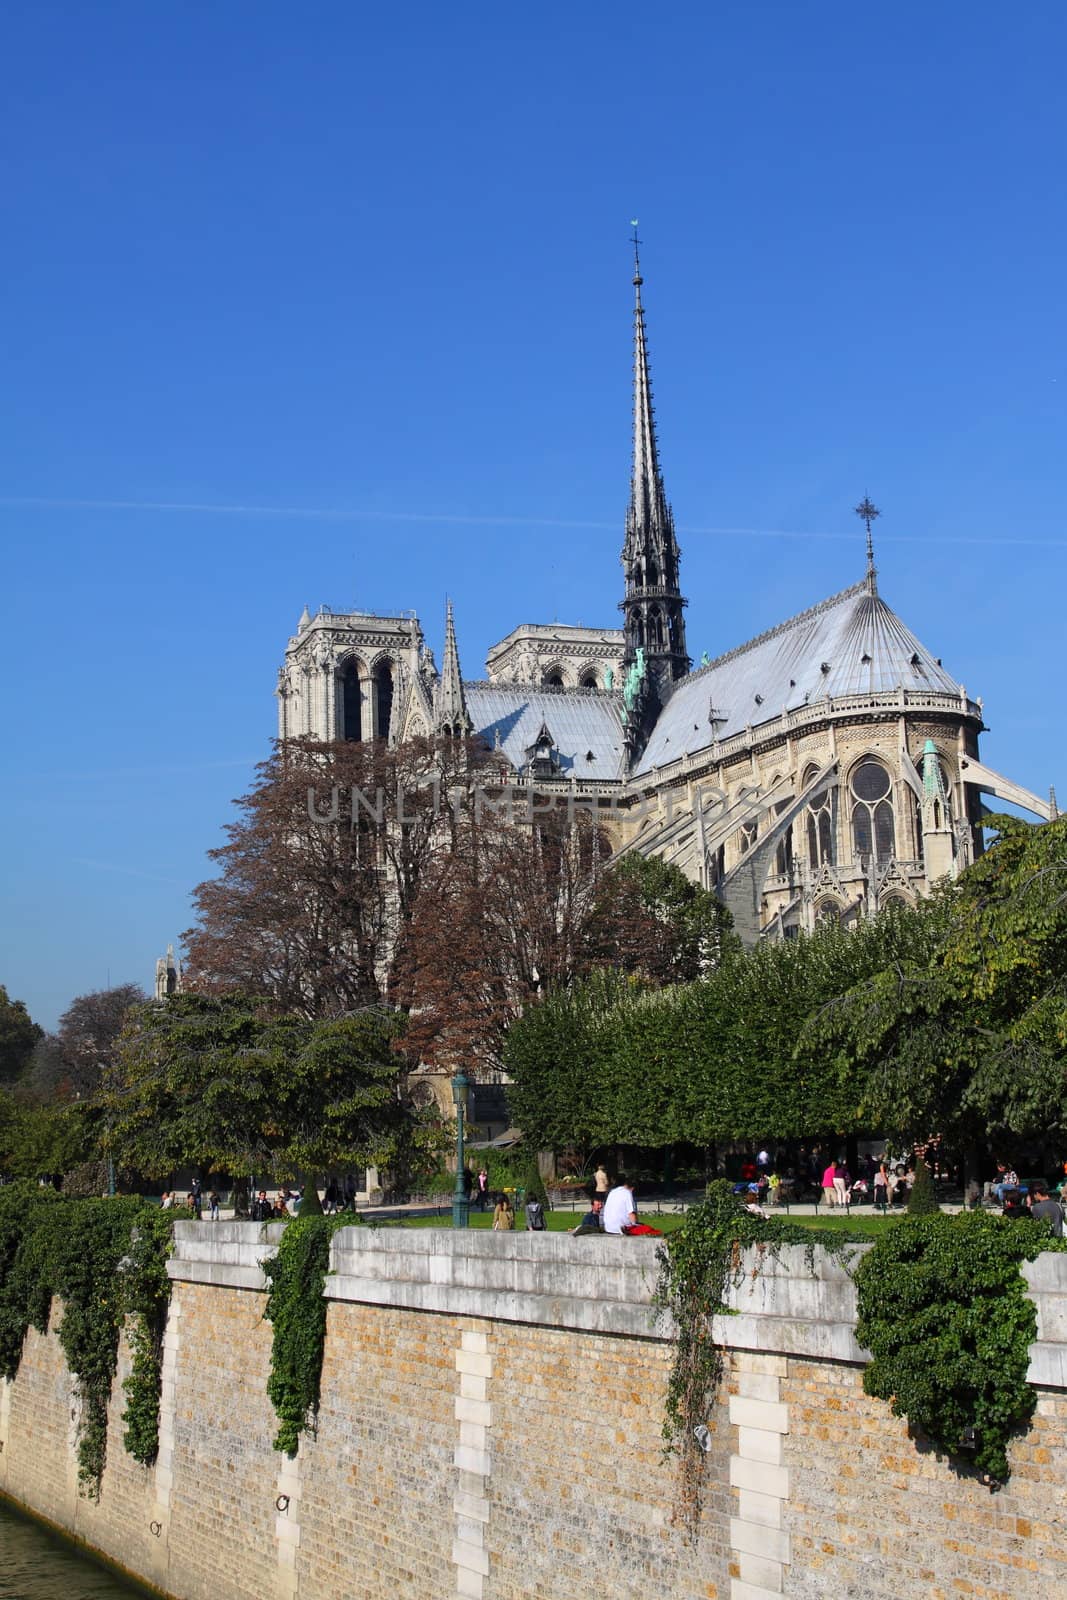 Notre Dame Cathedral - Paris